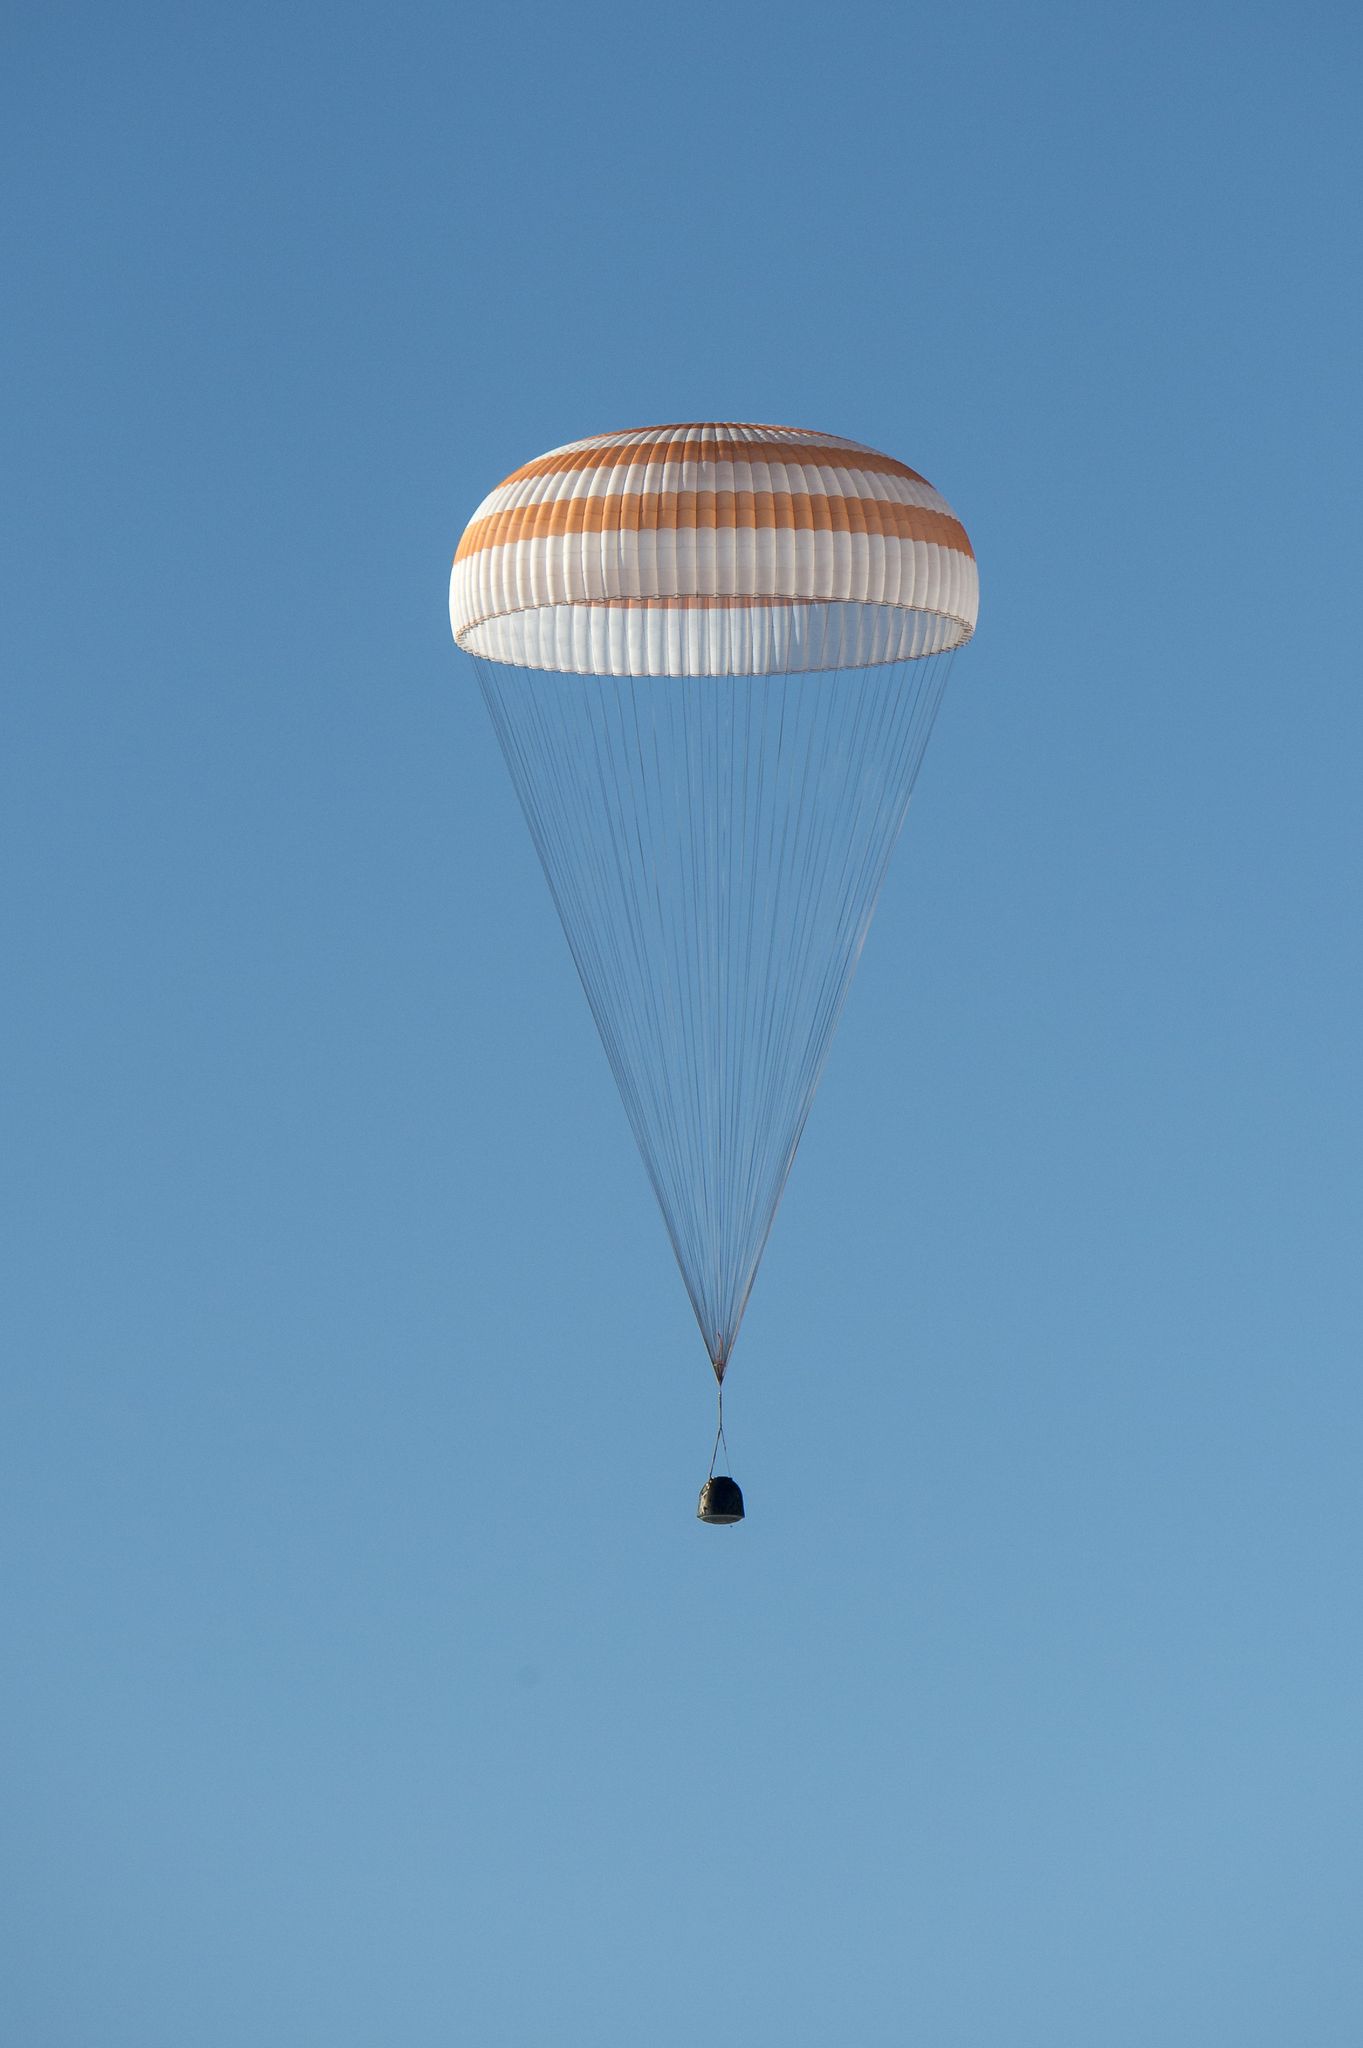 Descente du Soyouz TMA-11M le 14 mai 2014 avec l'expédition 39 à son bord (Crédits : NASA/Bill Ingalls)